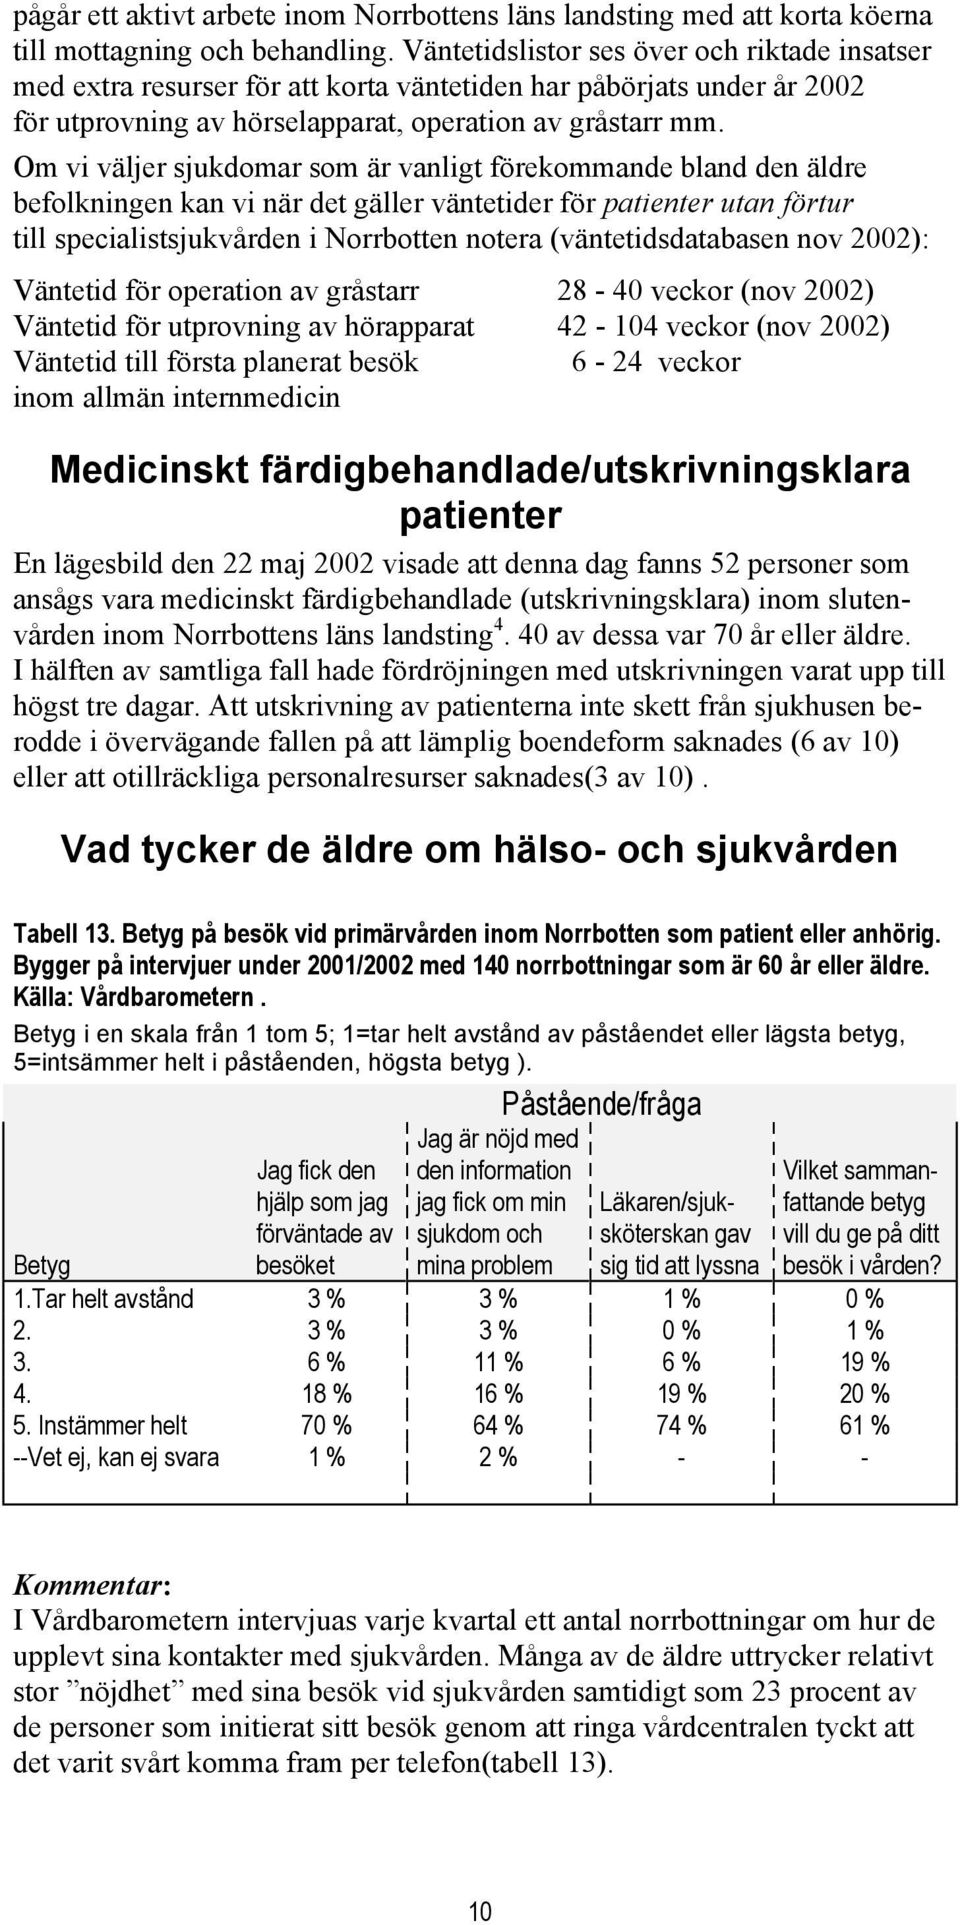 Om vi väljer sjukdomar som är vanligt förekommande bland den äldre befolkningen kan vi när det gäller väntetider för patienter utan förtur till specialistsjukvården i Norrbotten notera